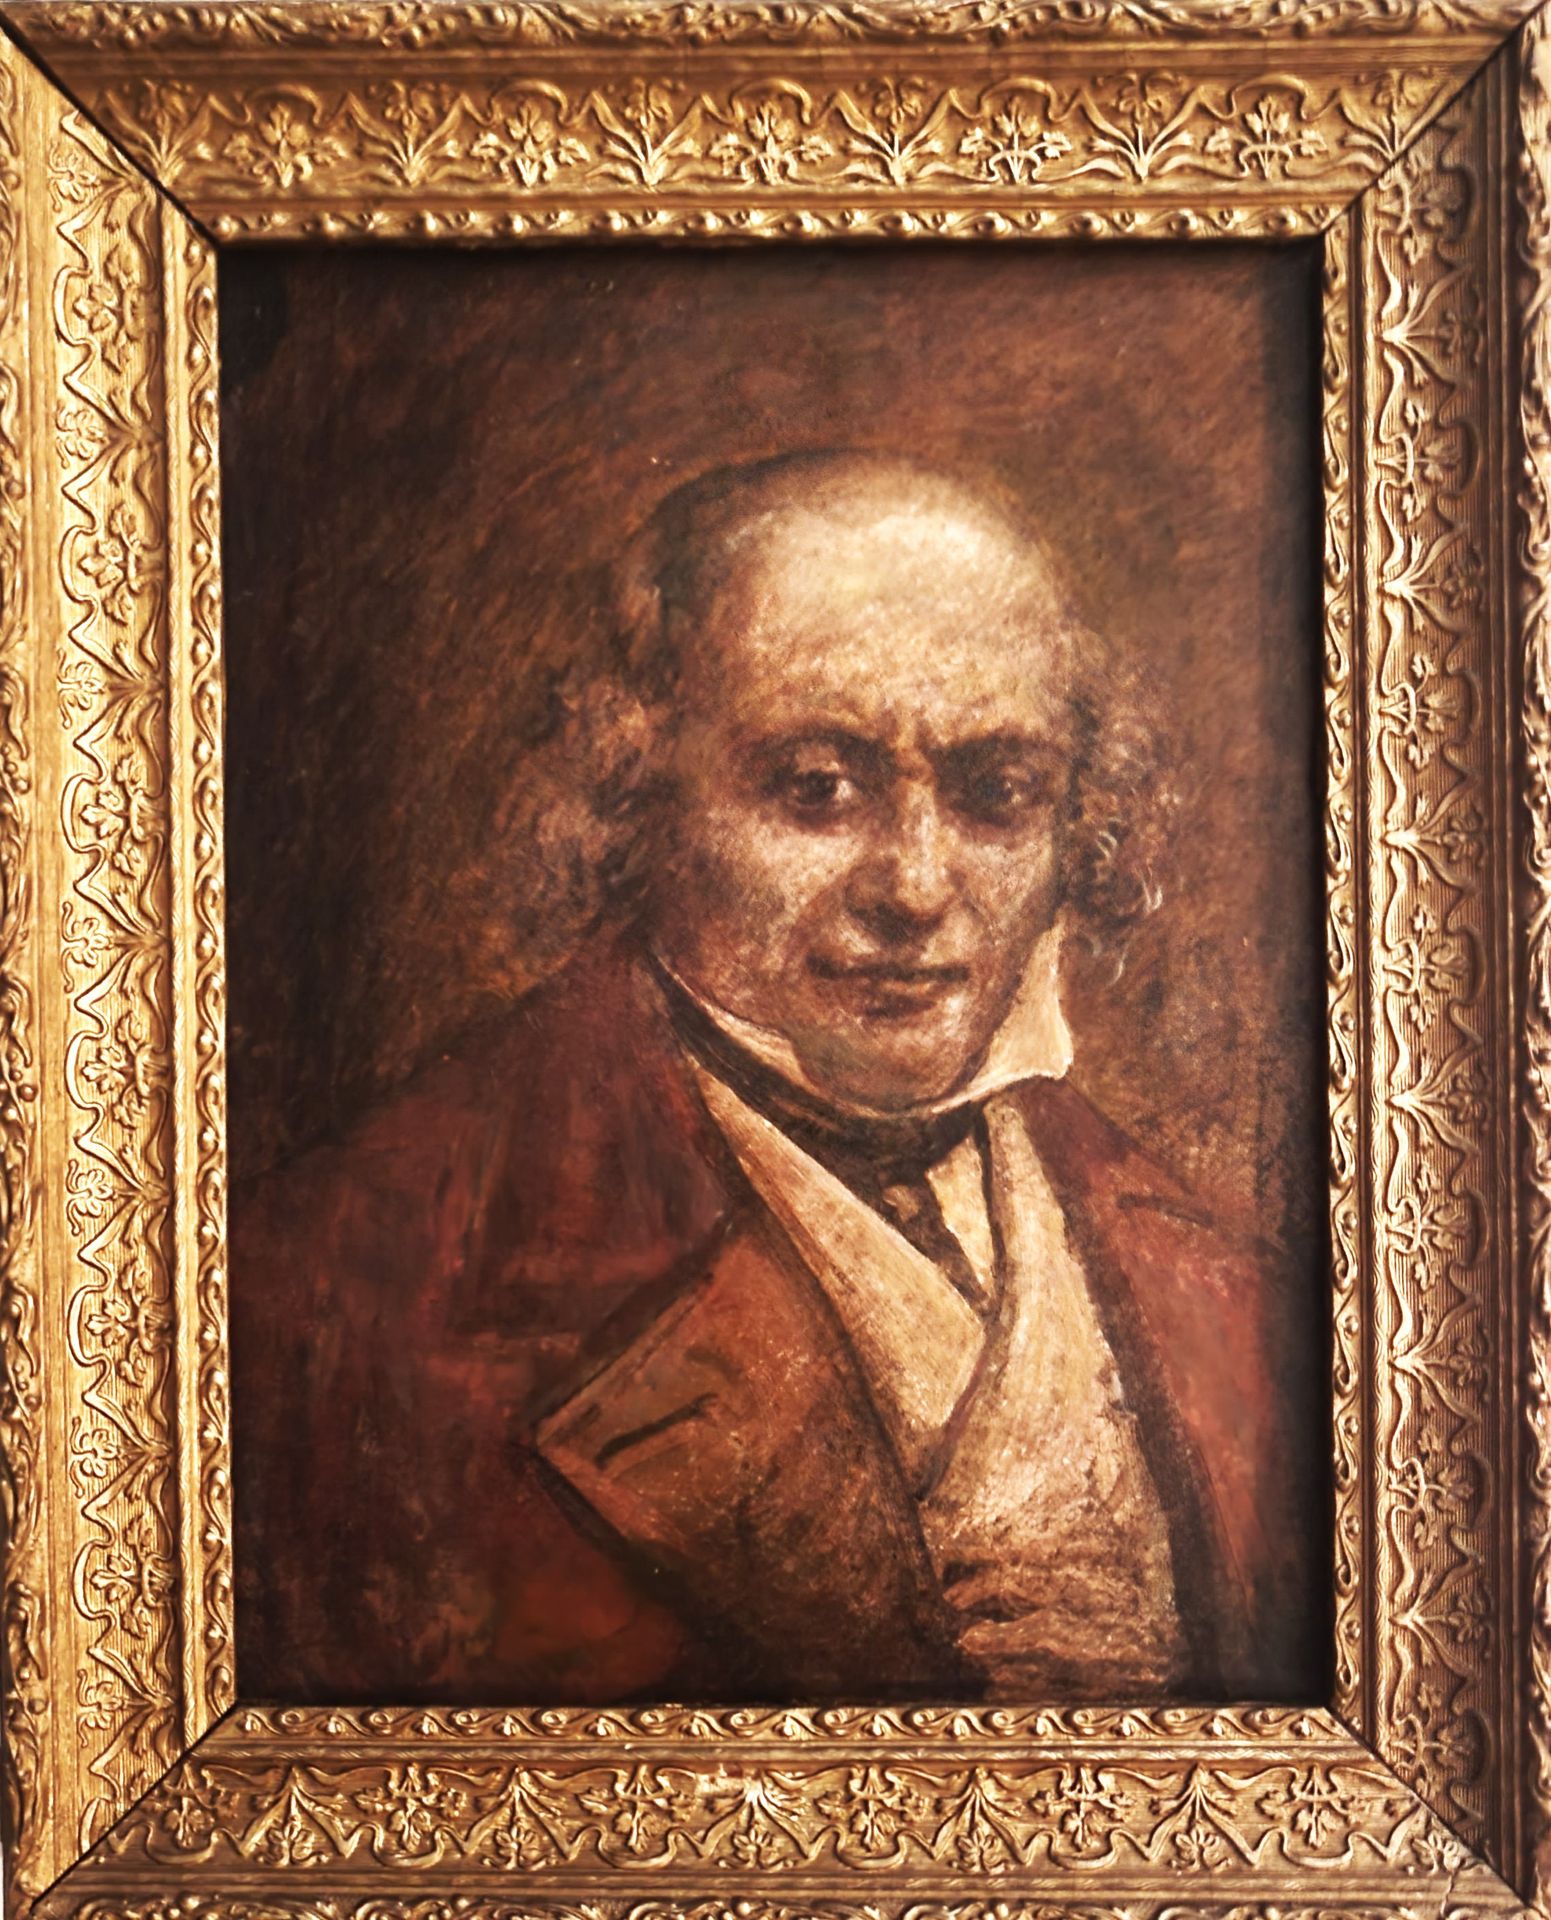 Null 皮埃尔-让-德-贝朗热（1780-1857，吟游诗人）/原始时期肖像（19世纪中叶）：布面油画（25 x 34厘米，背面可见修复痕迹），带框